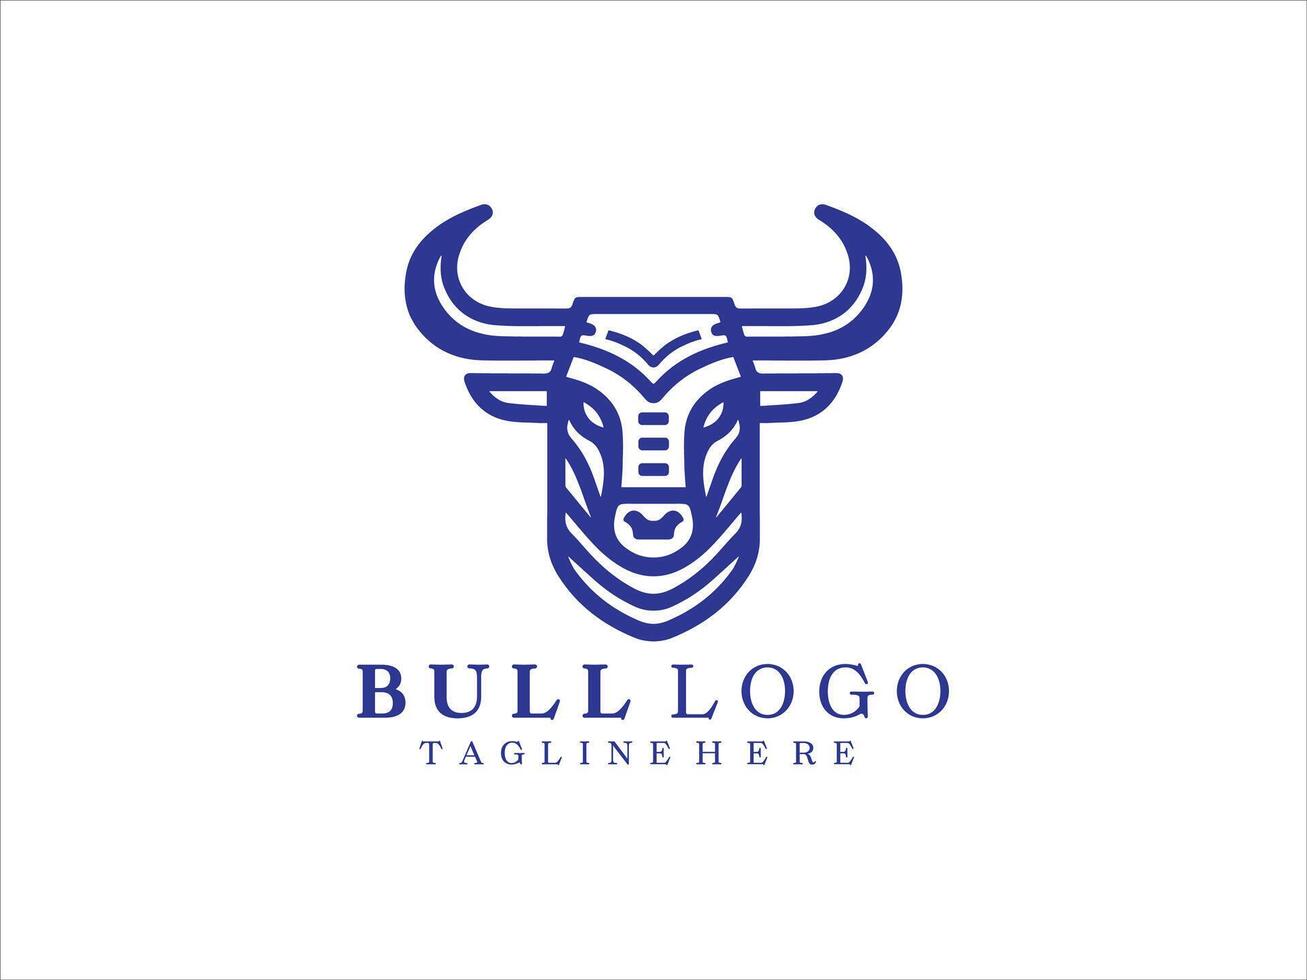 logotipo de cabeza de toro vector